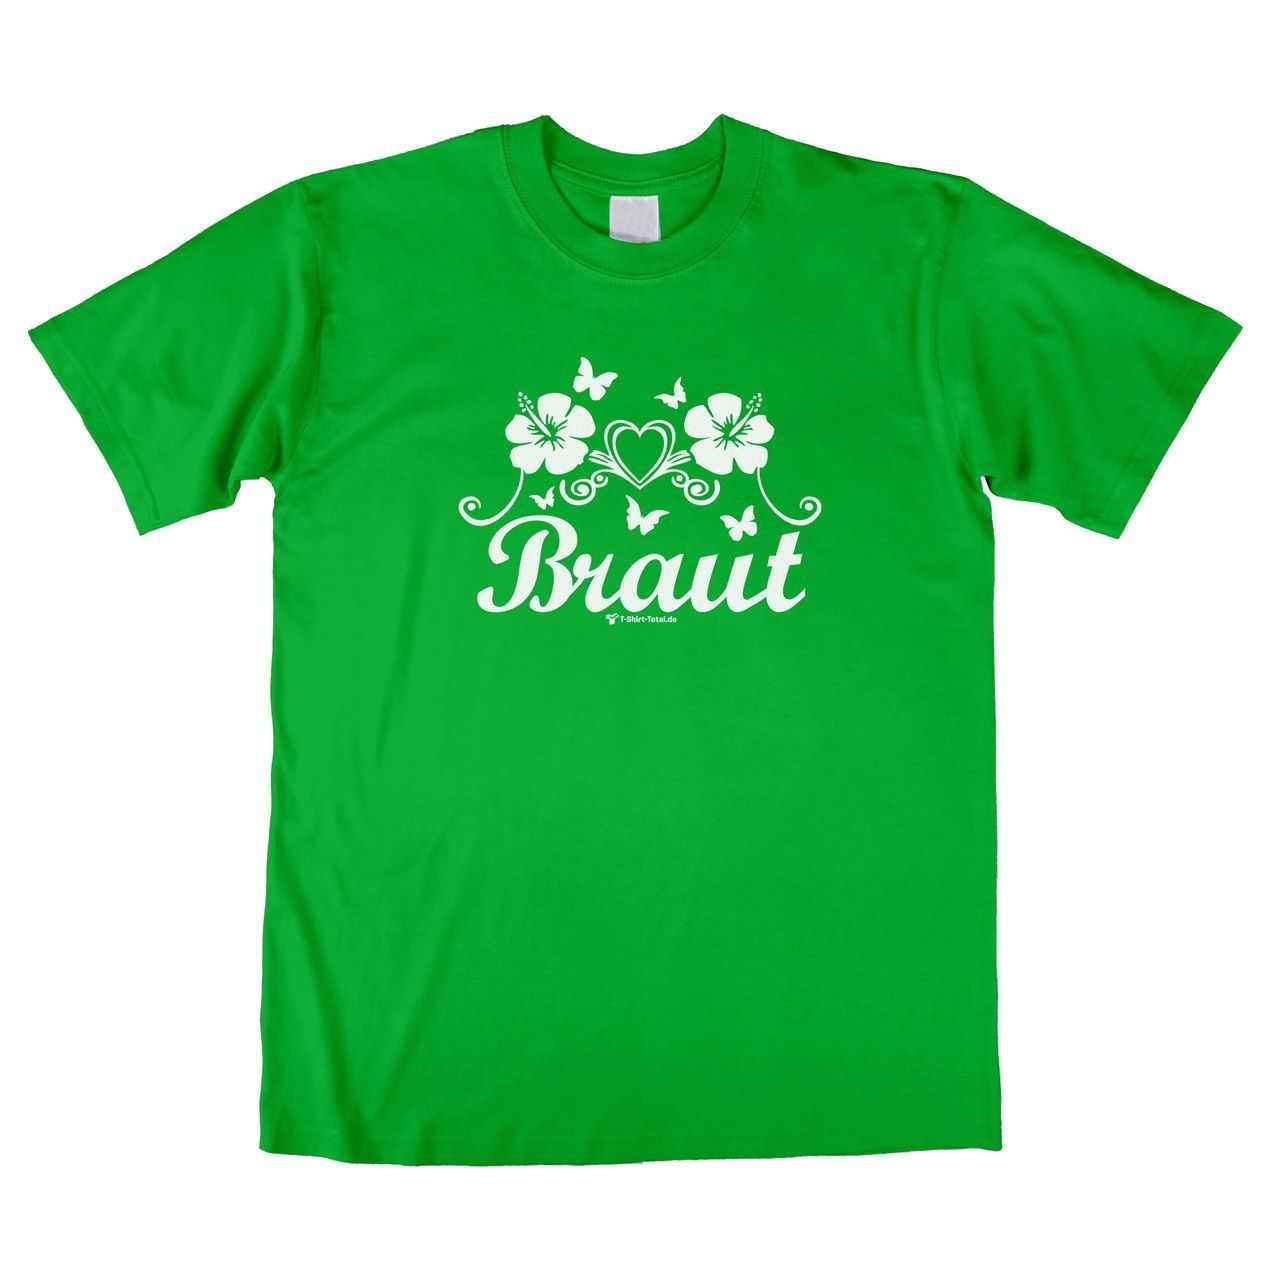 Die Braut Unisex T-Shirt grün Small